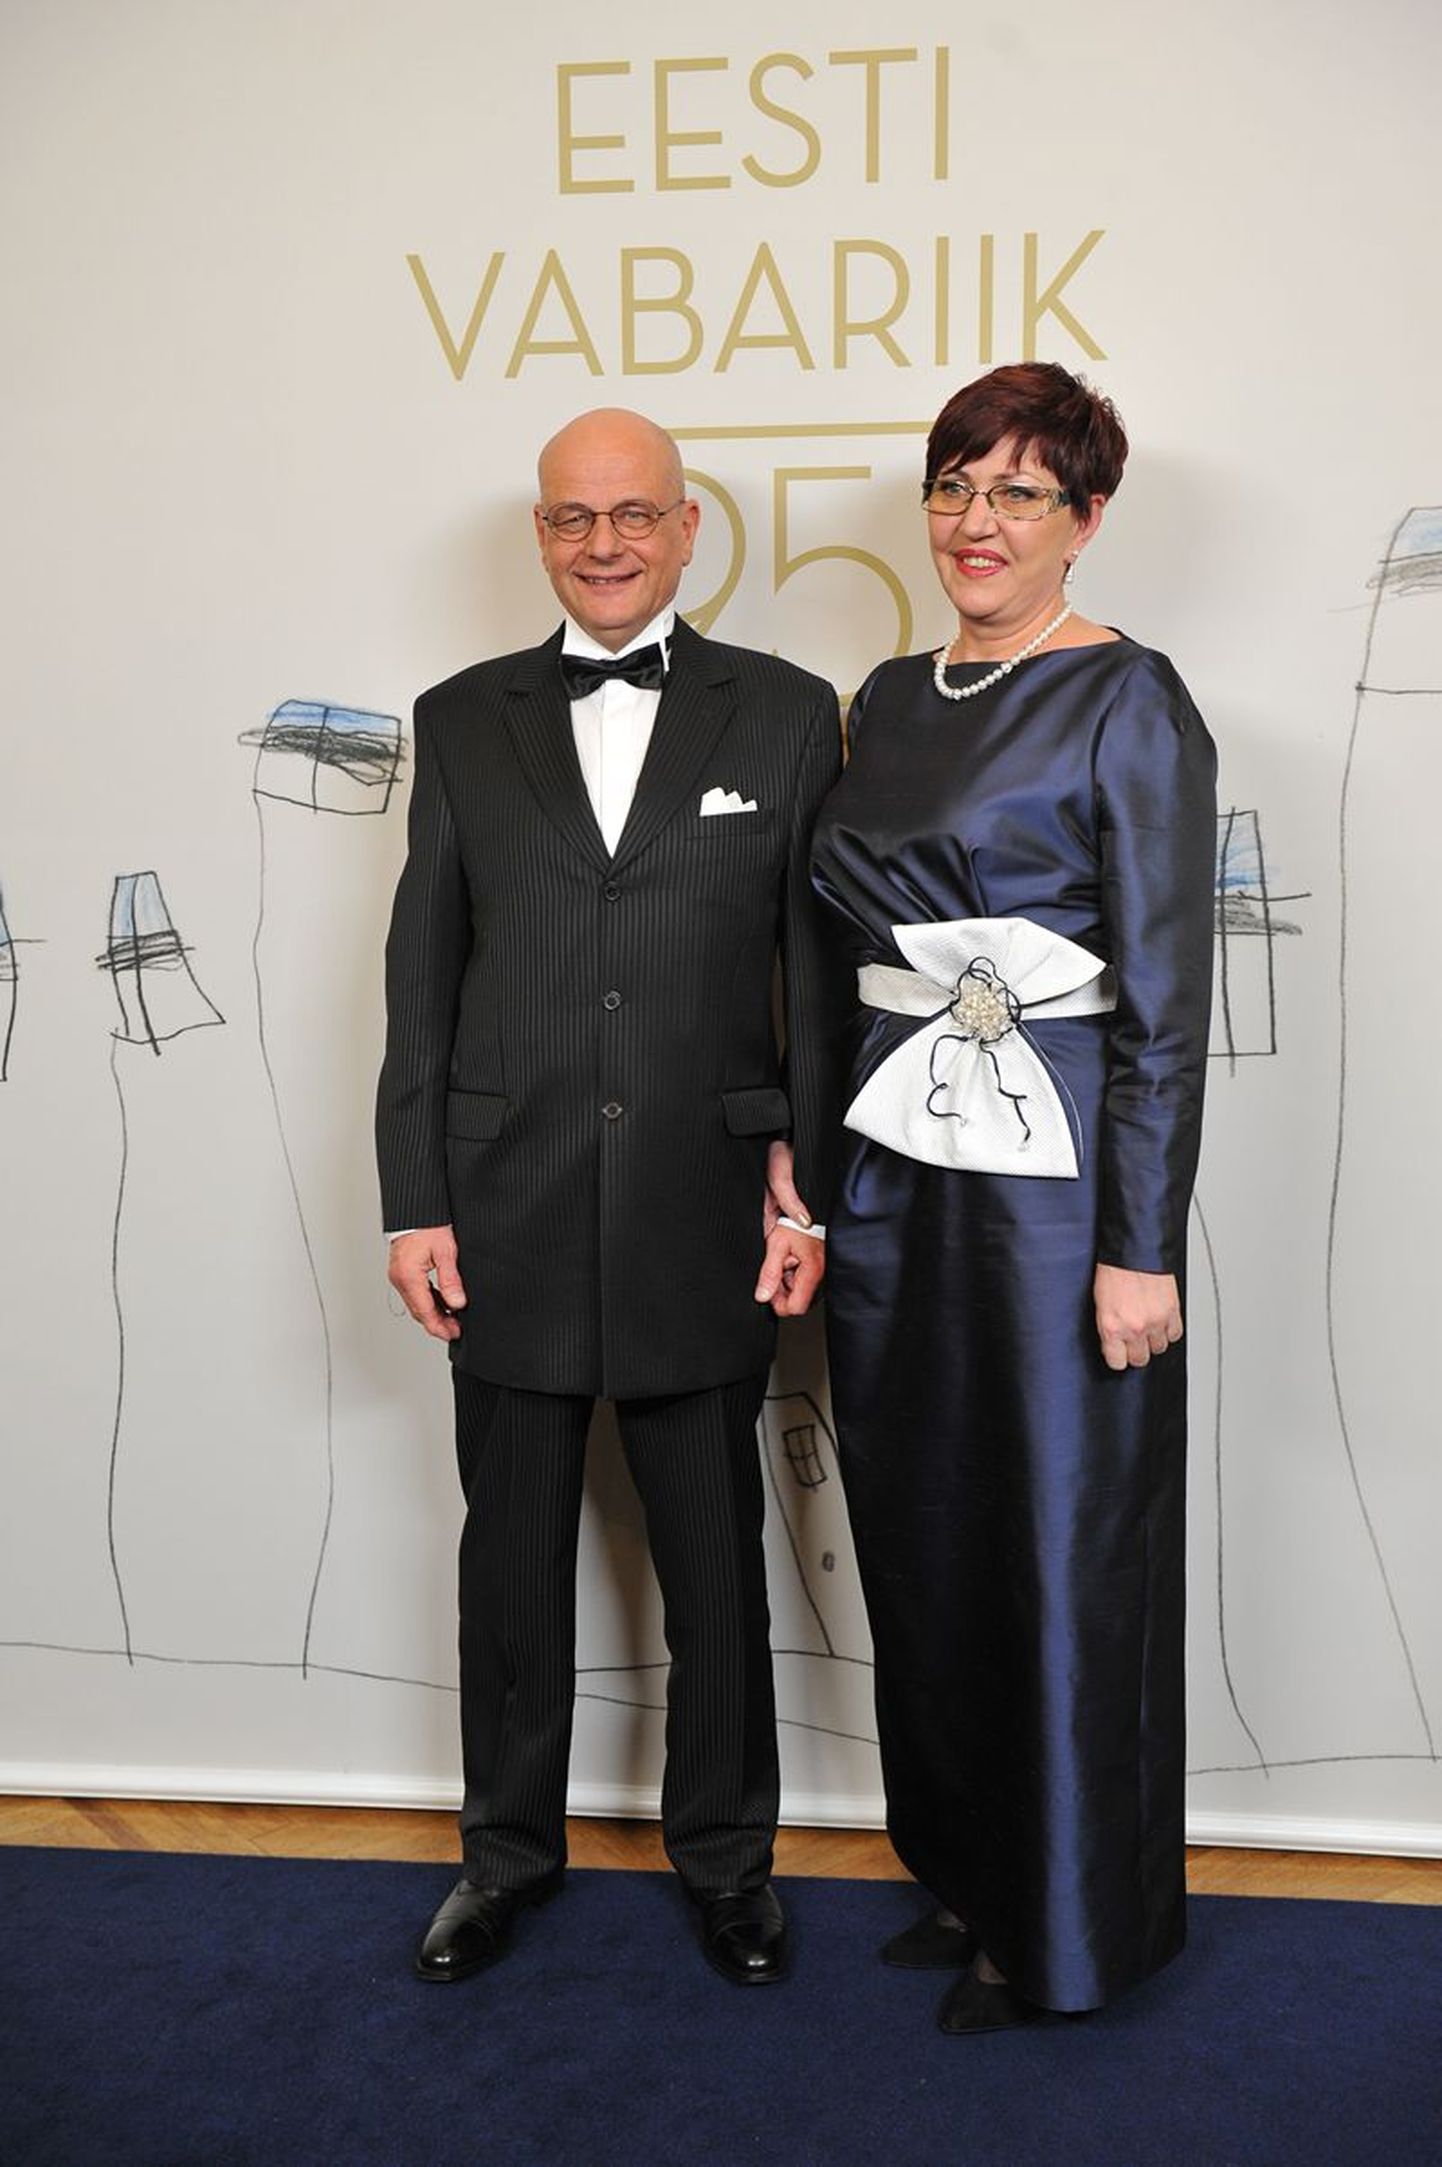 AS Svarmil juht Svetlana Heino koos abikaasaga presidendi poolt 2013. aastal korraldatud Eesti Vabariigi aastapäeva vastuvõtul.